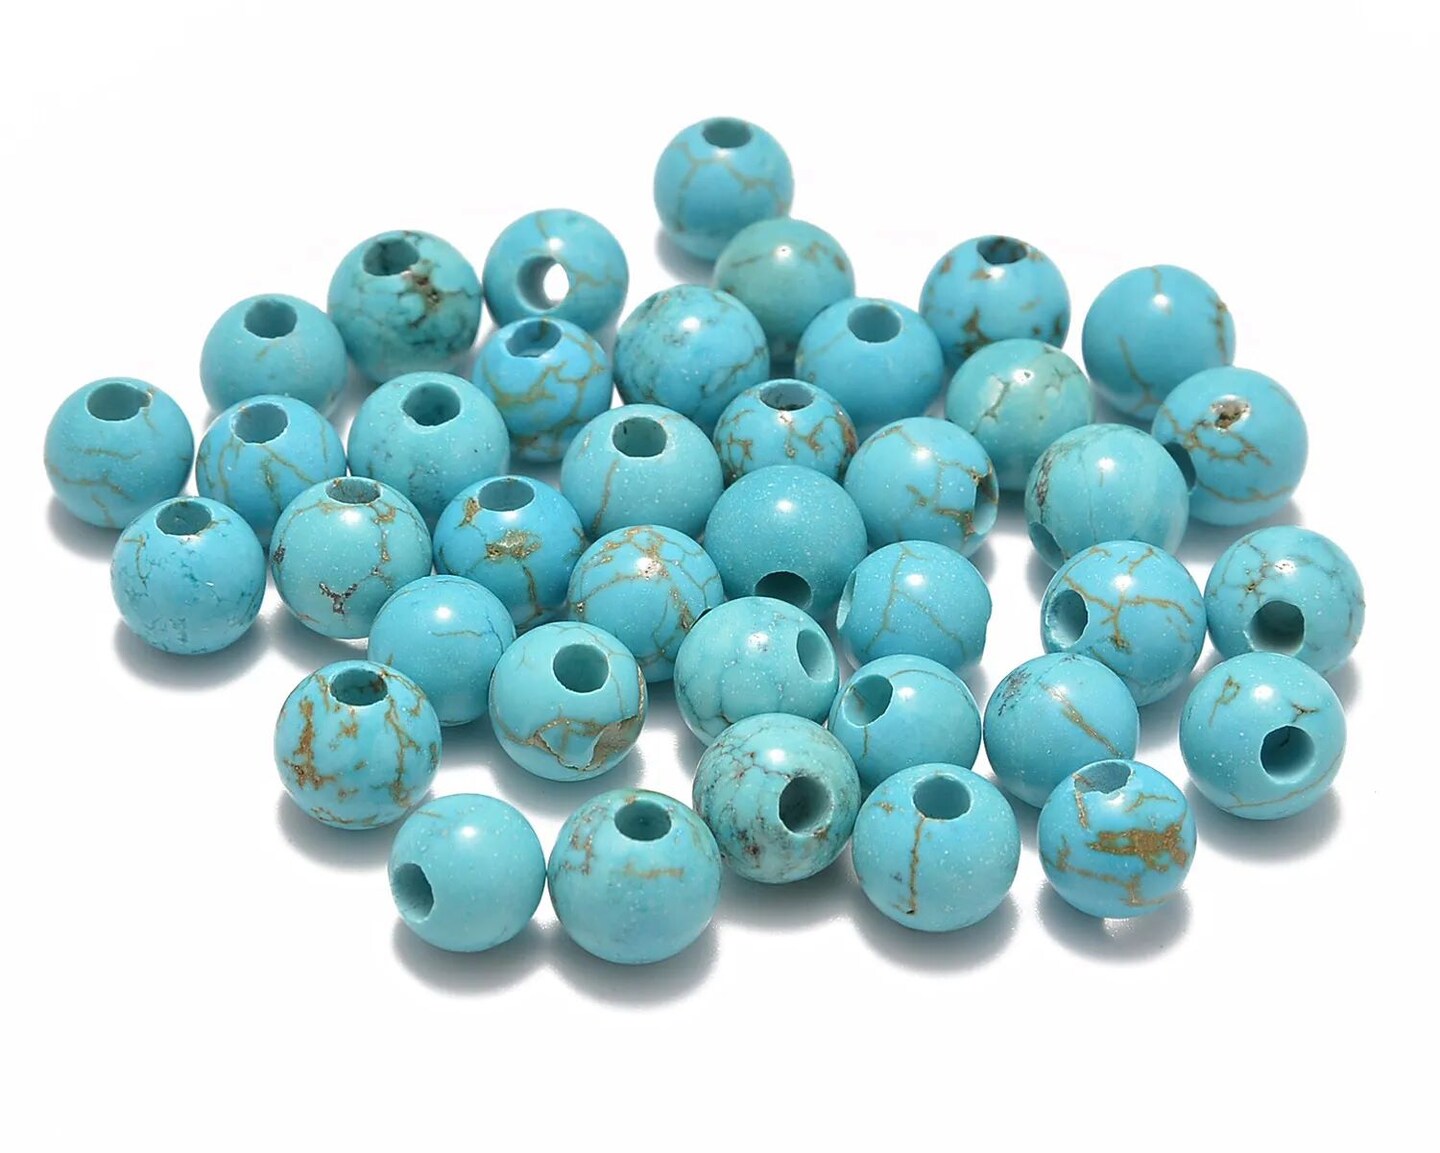 Kitcheniva Natural Gemstone Round Loose Beads With Big Hole 40 Pcs